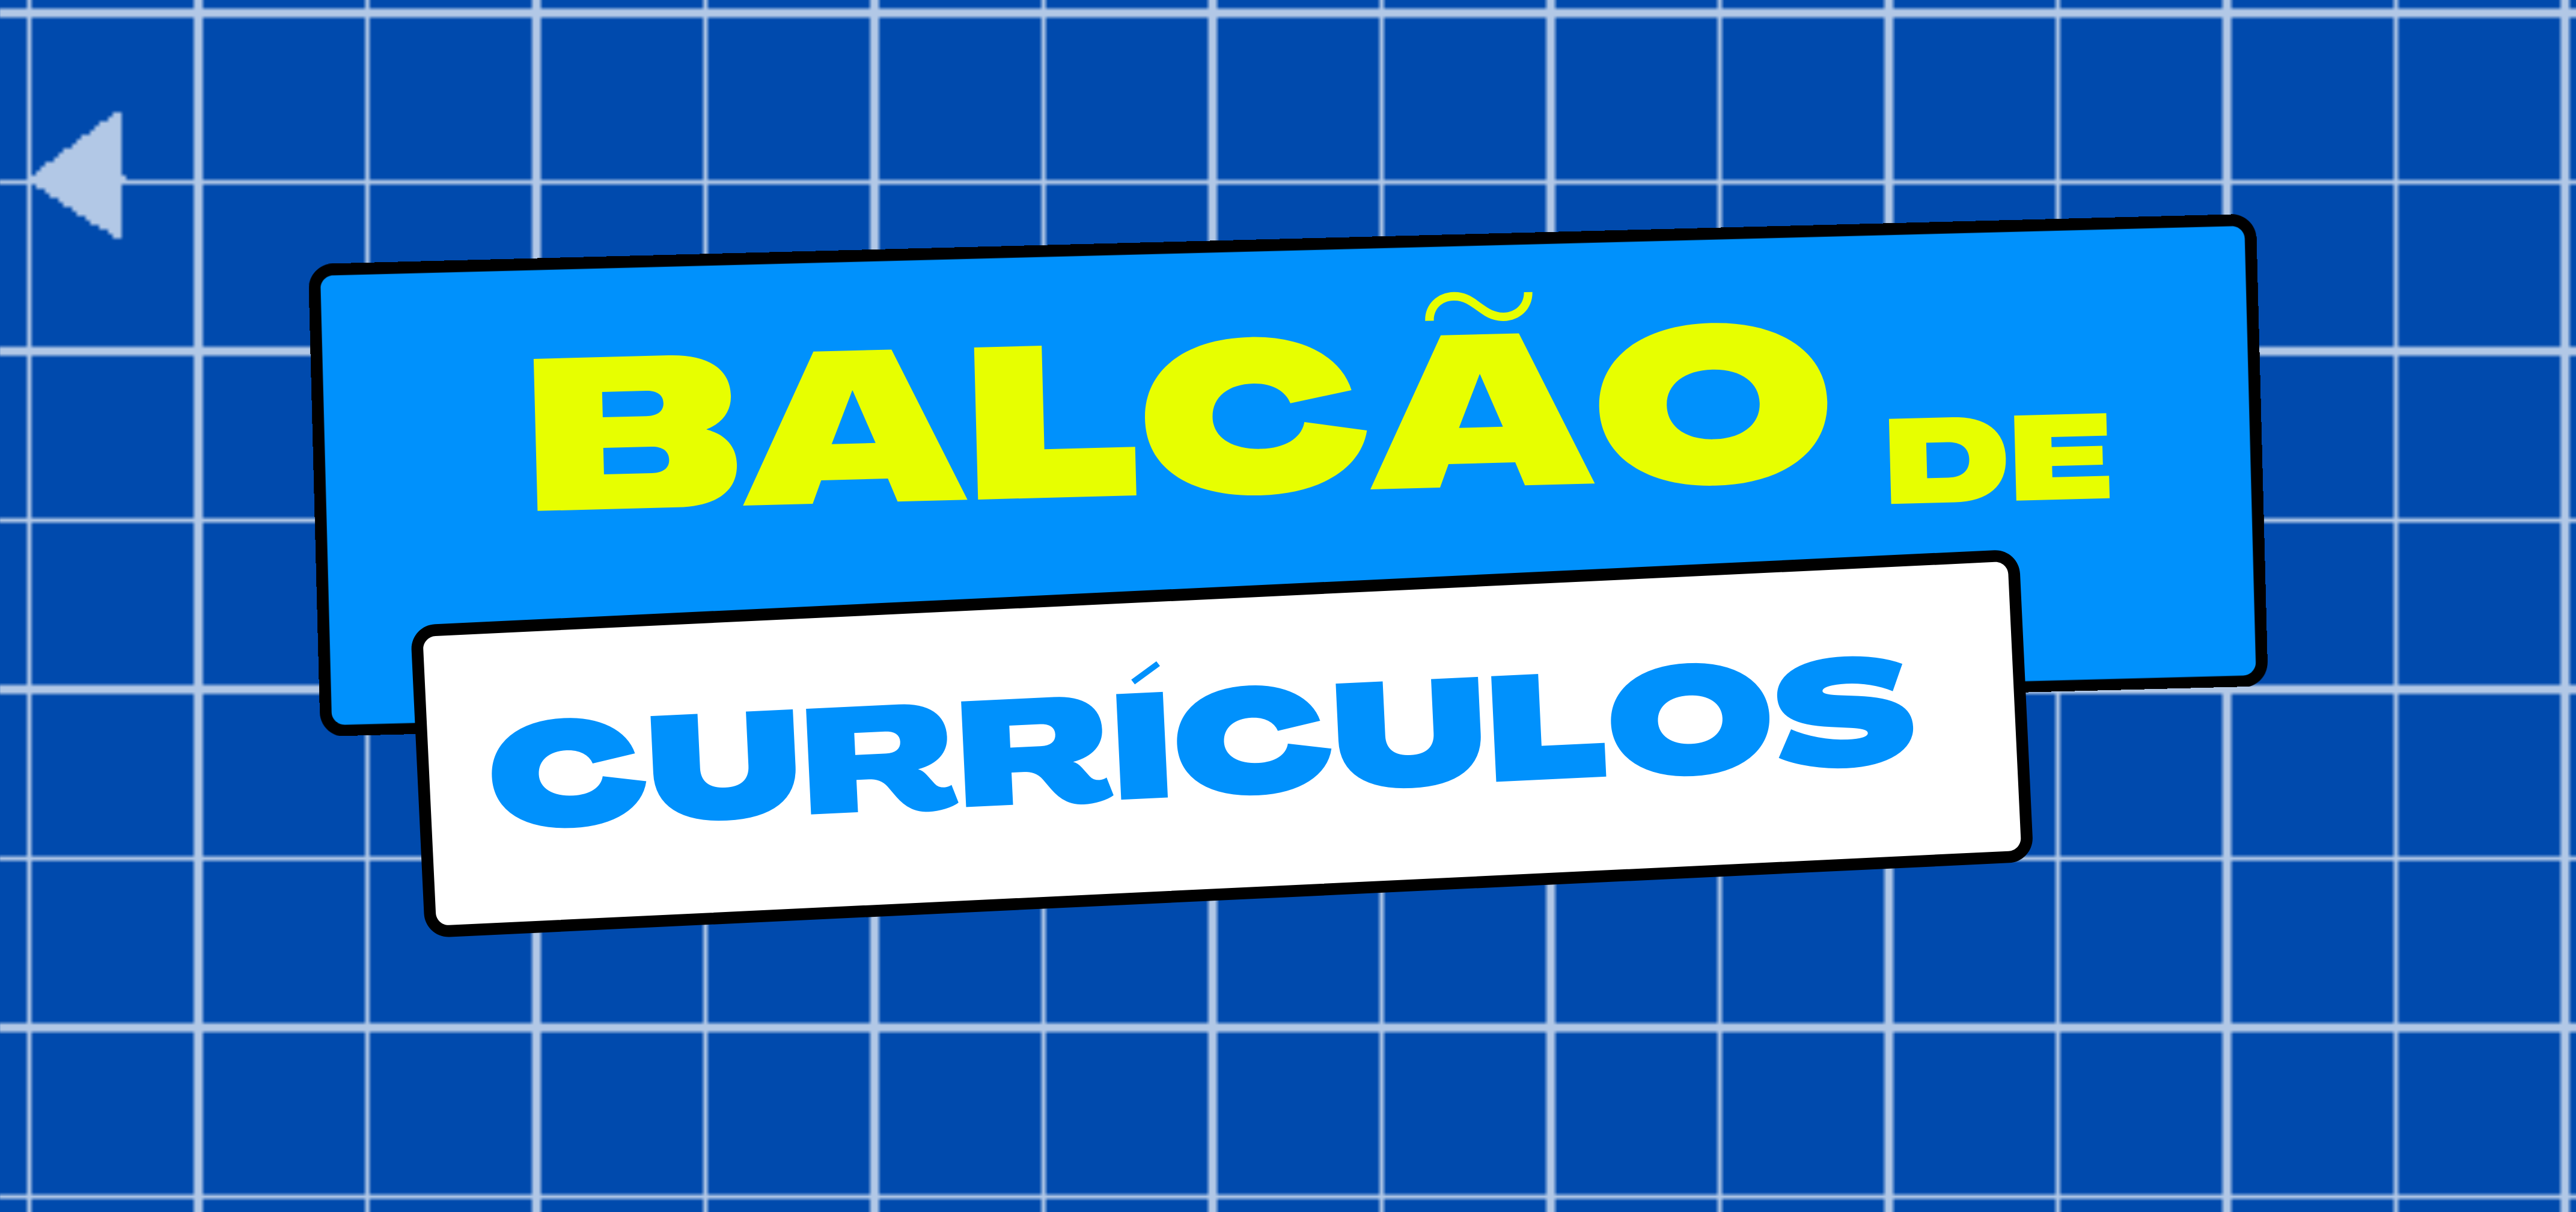 BALCÃO DE CURRÍCULO